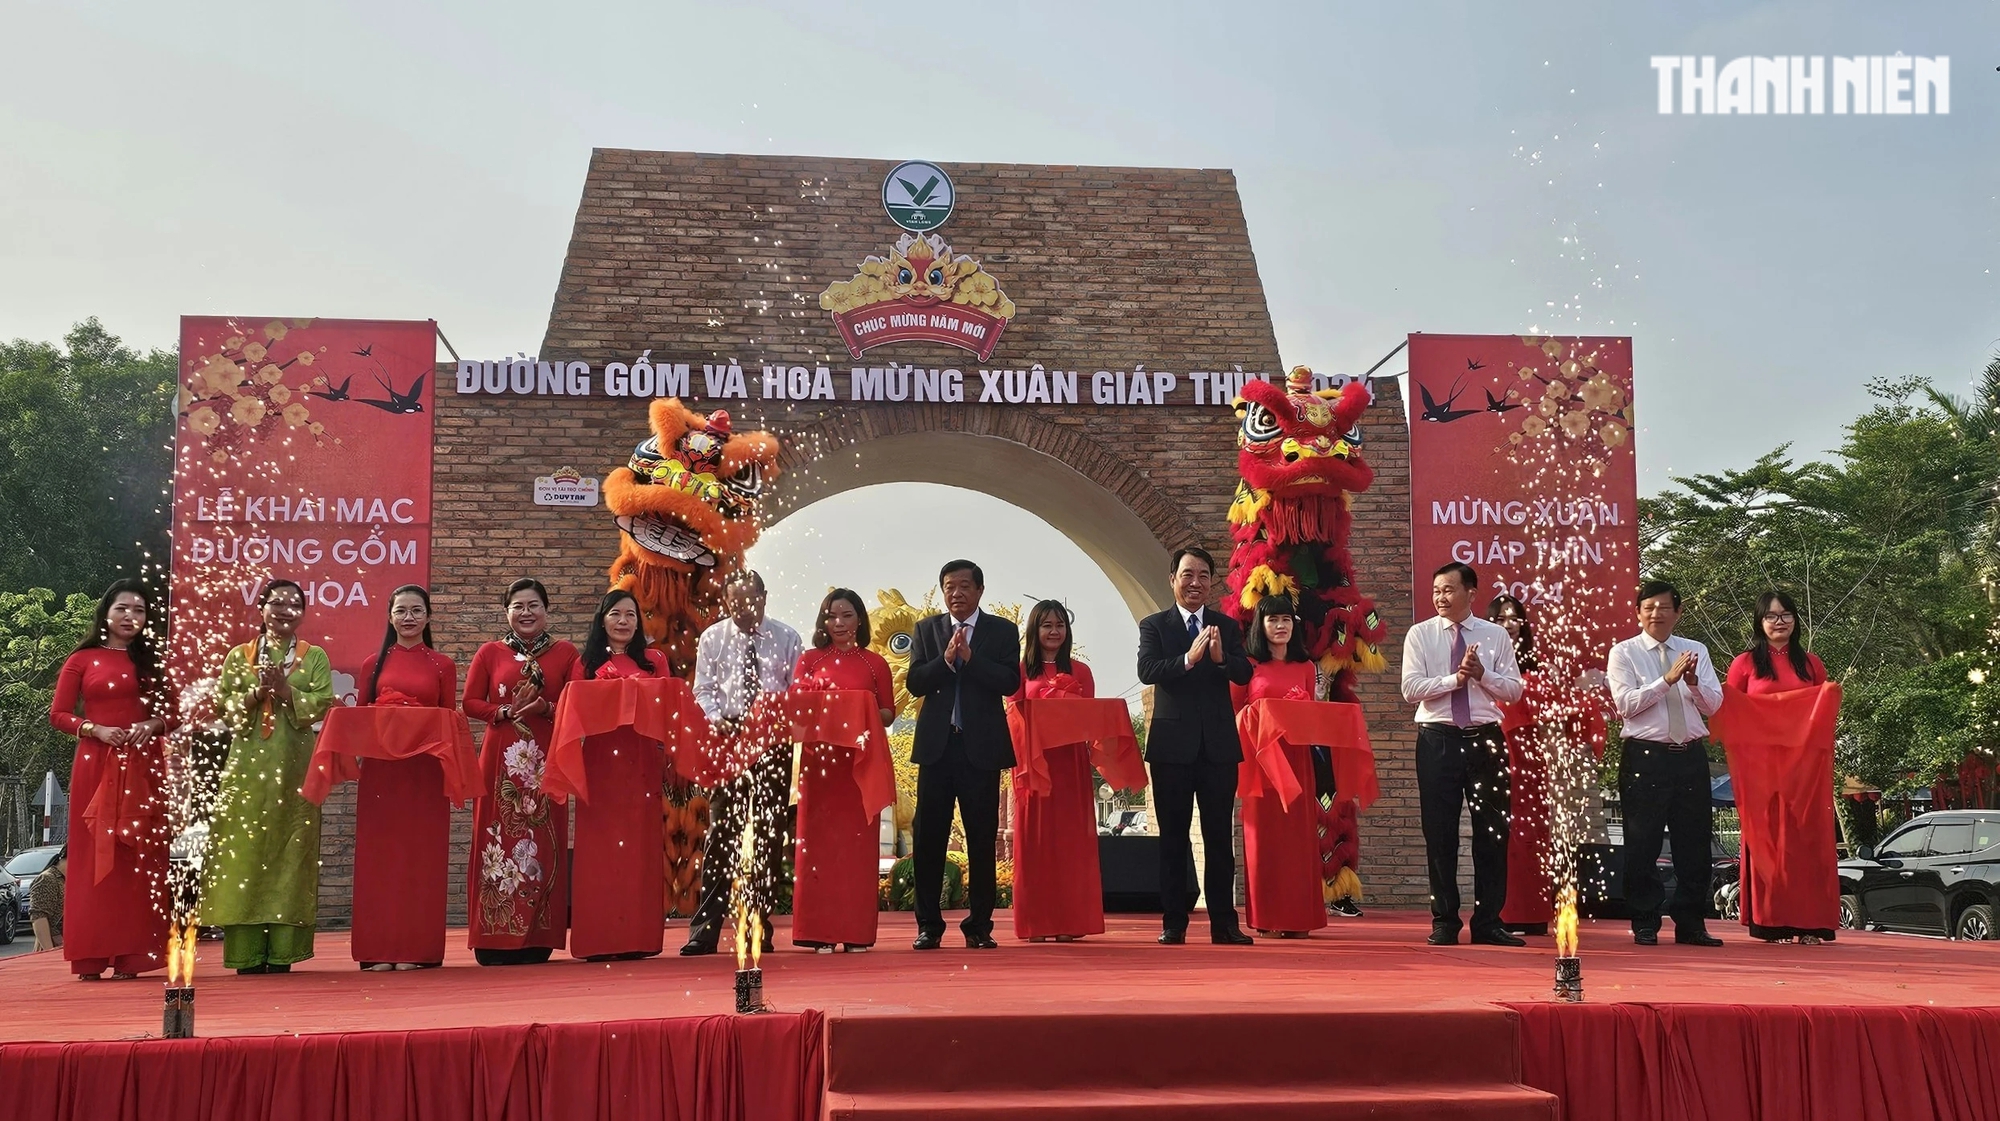 Chiêm ngưỡng đường gốm đỏ và hoa dài nhất Việt Nam- Ảnh 2.